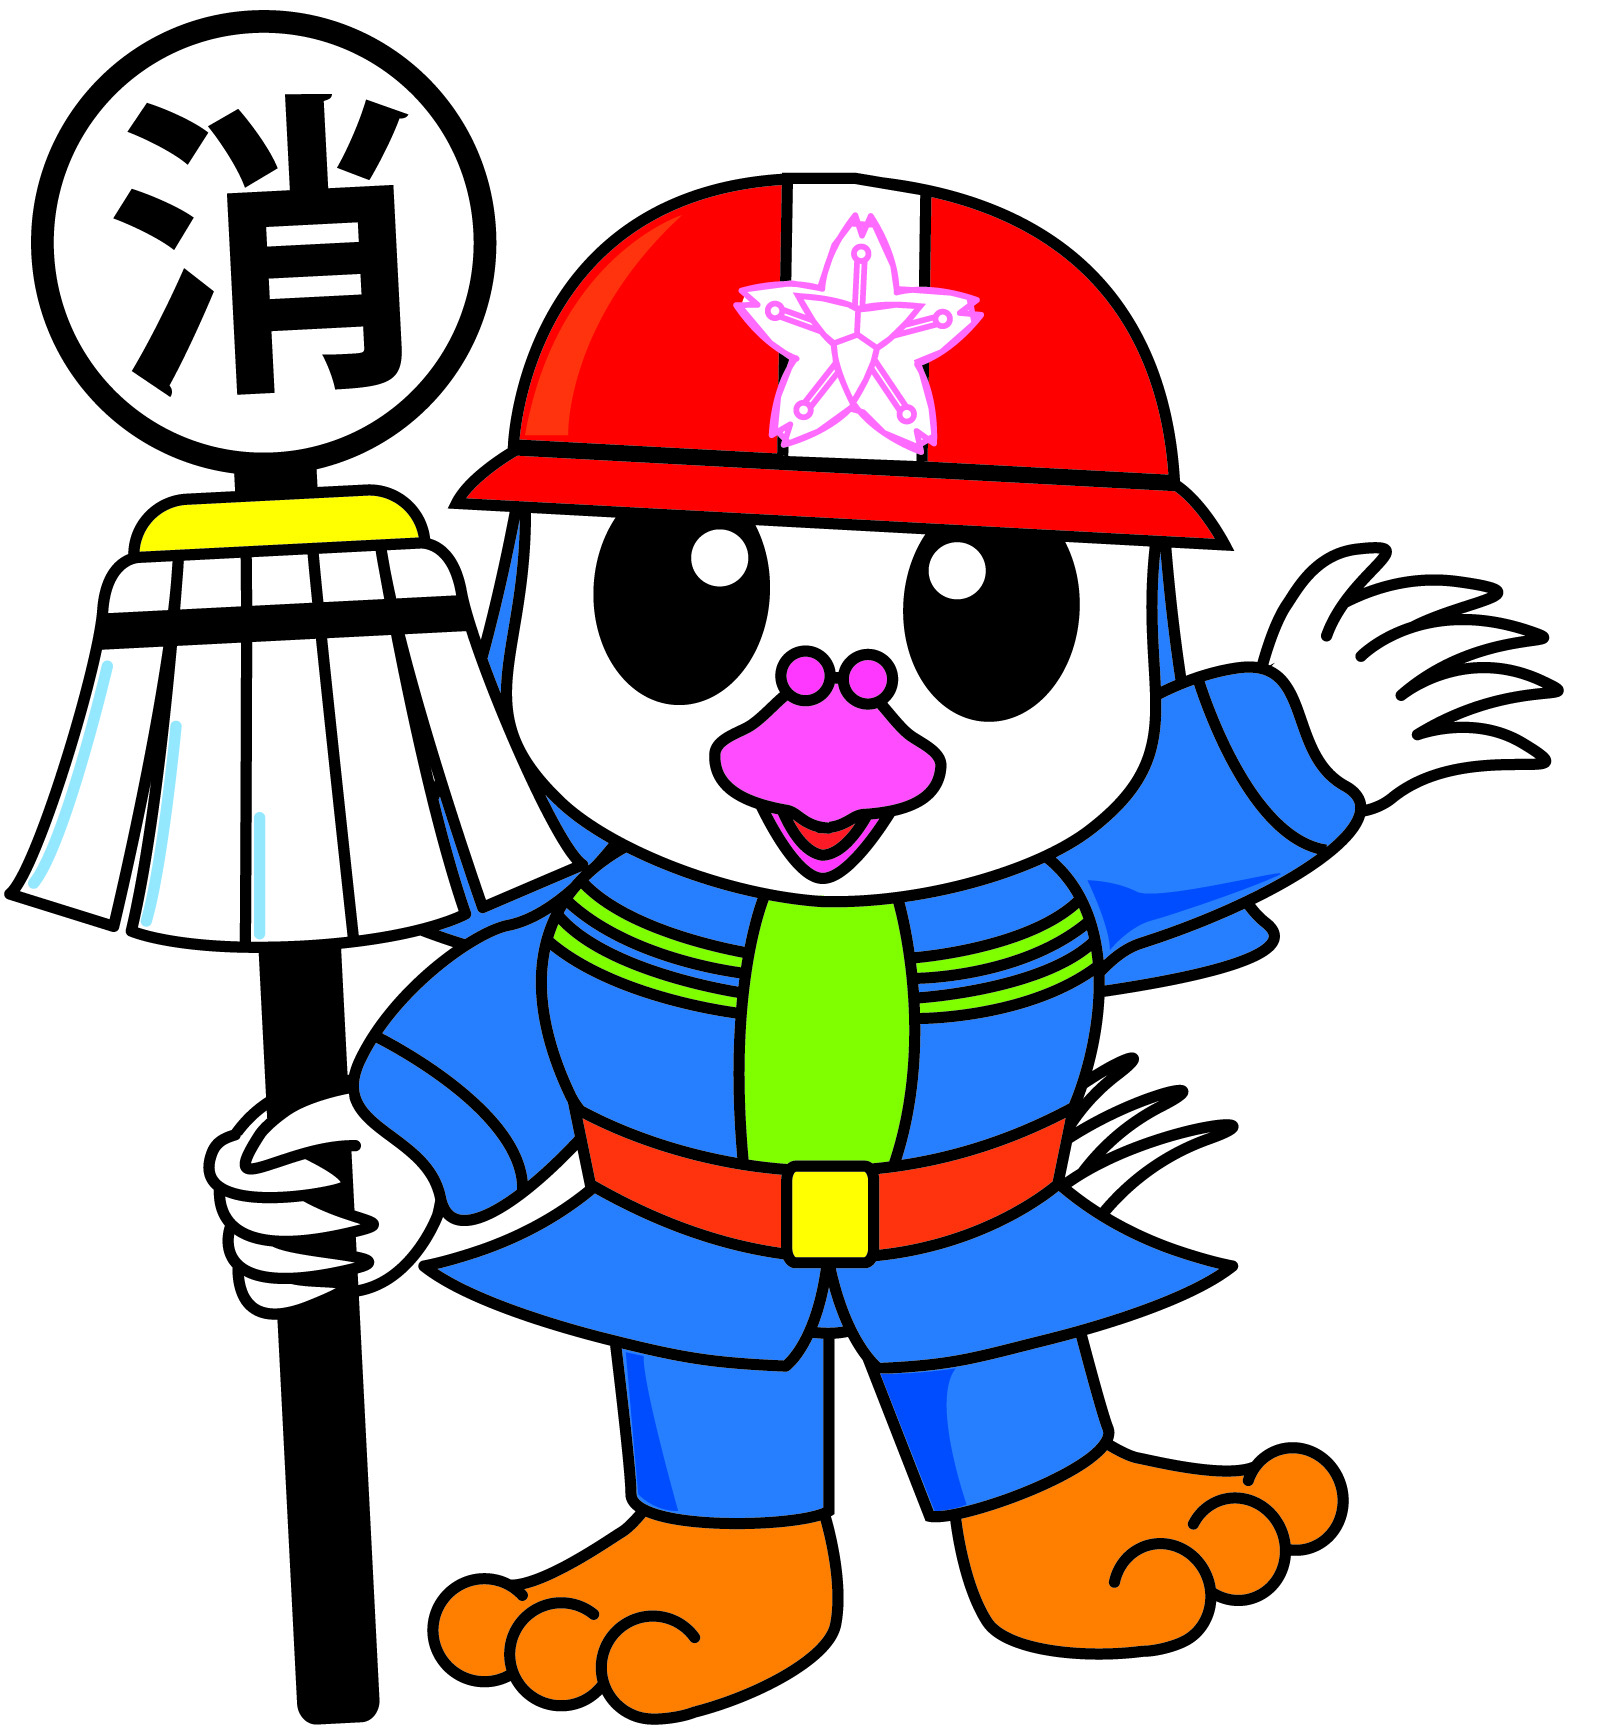 広島市消防団マスコットキャラクター「ひろピー」